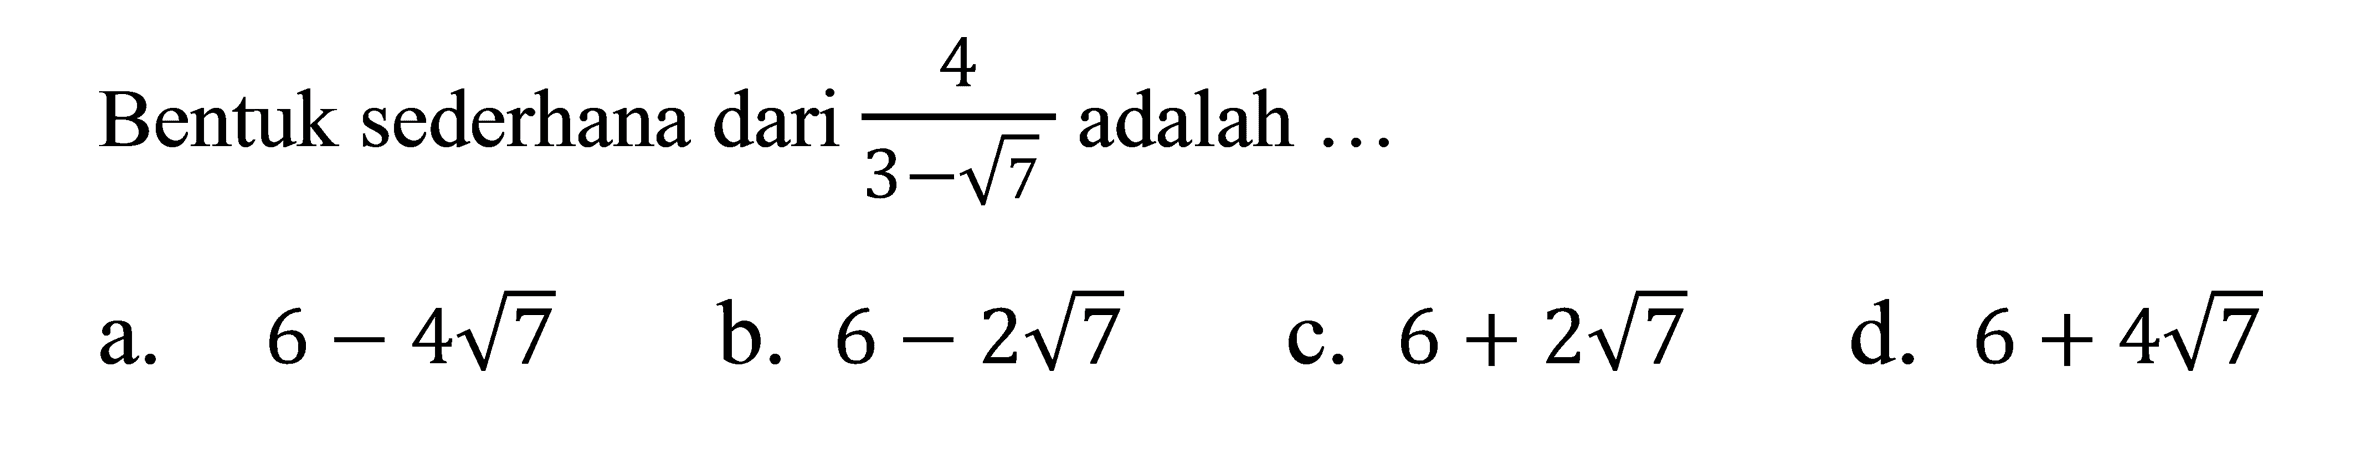 Bentuk sederhana dari 4/(3 - akar(7)) adalah